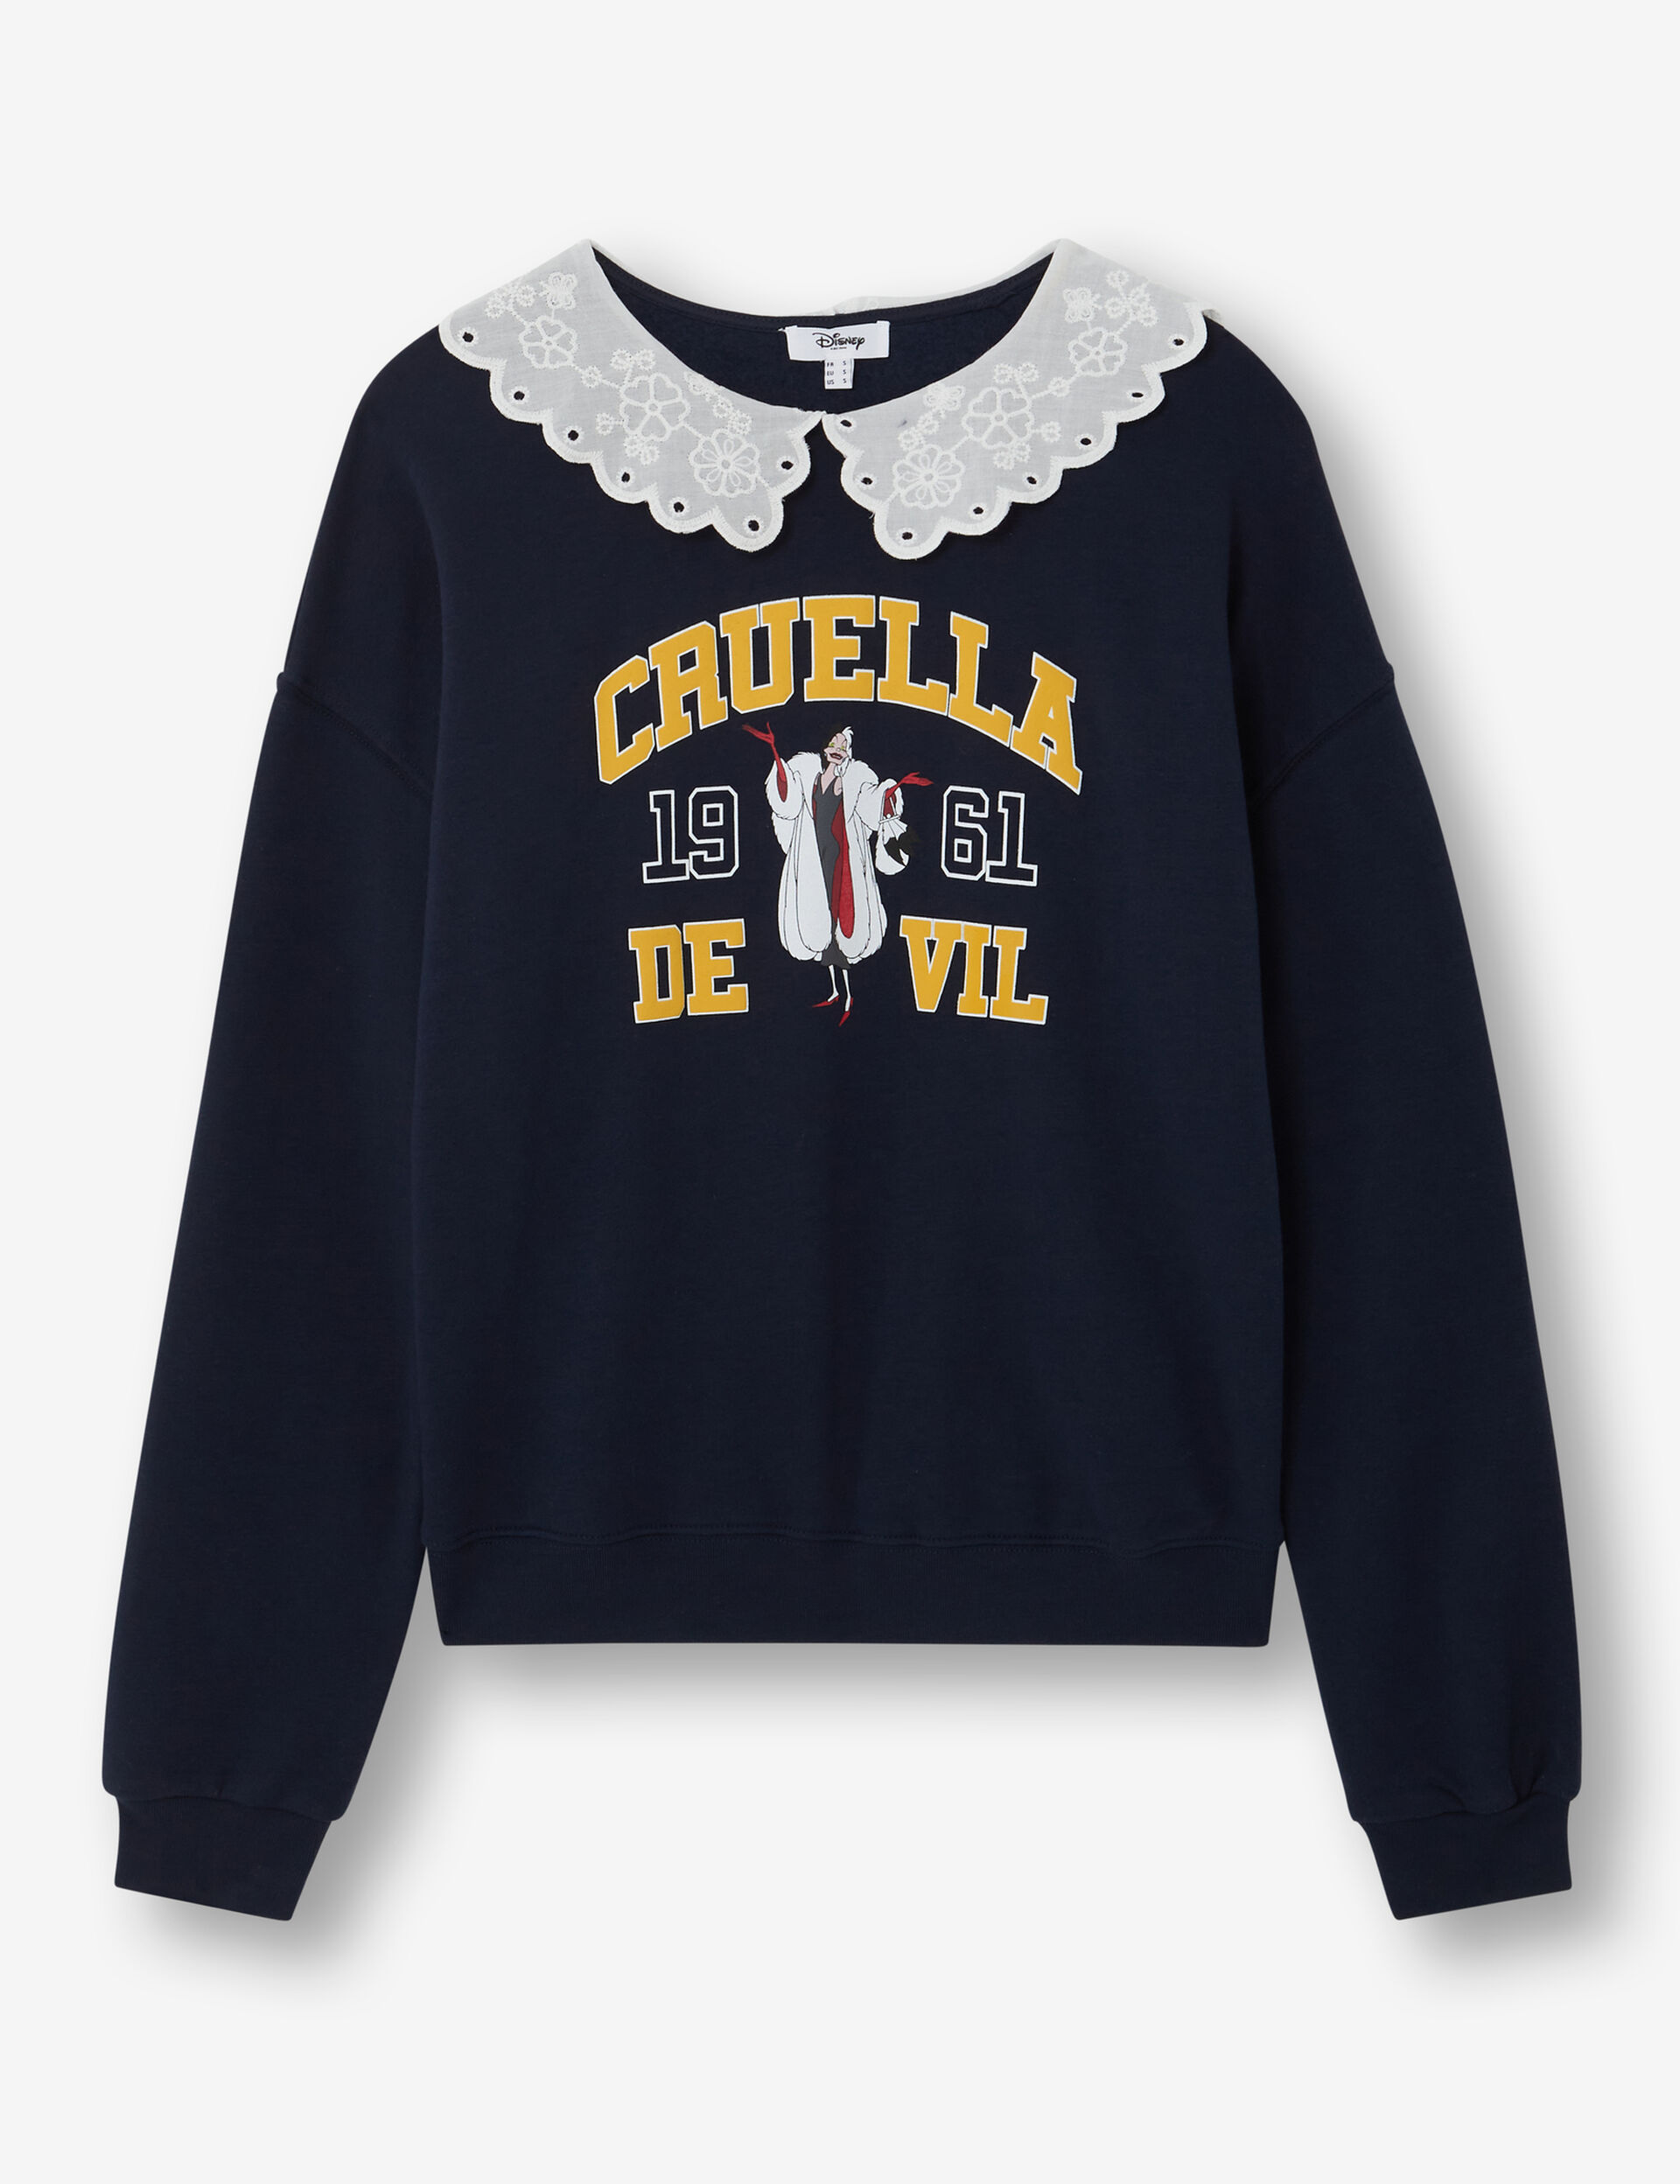 Cruella sweatshirt with collar detail